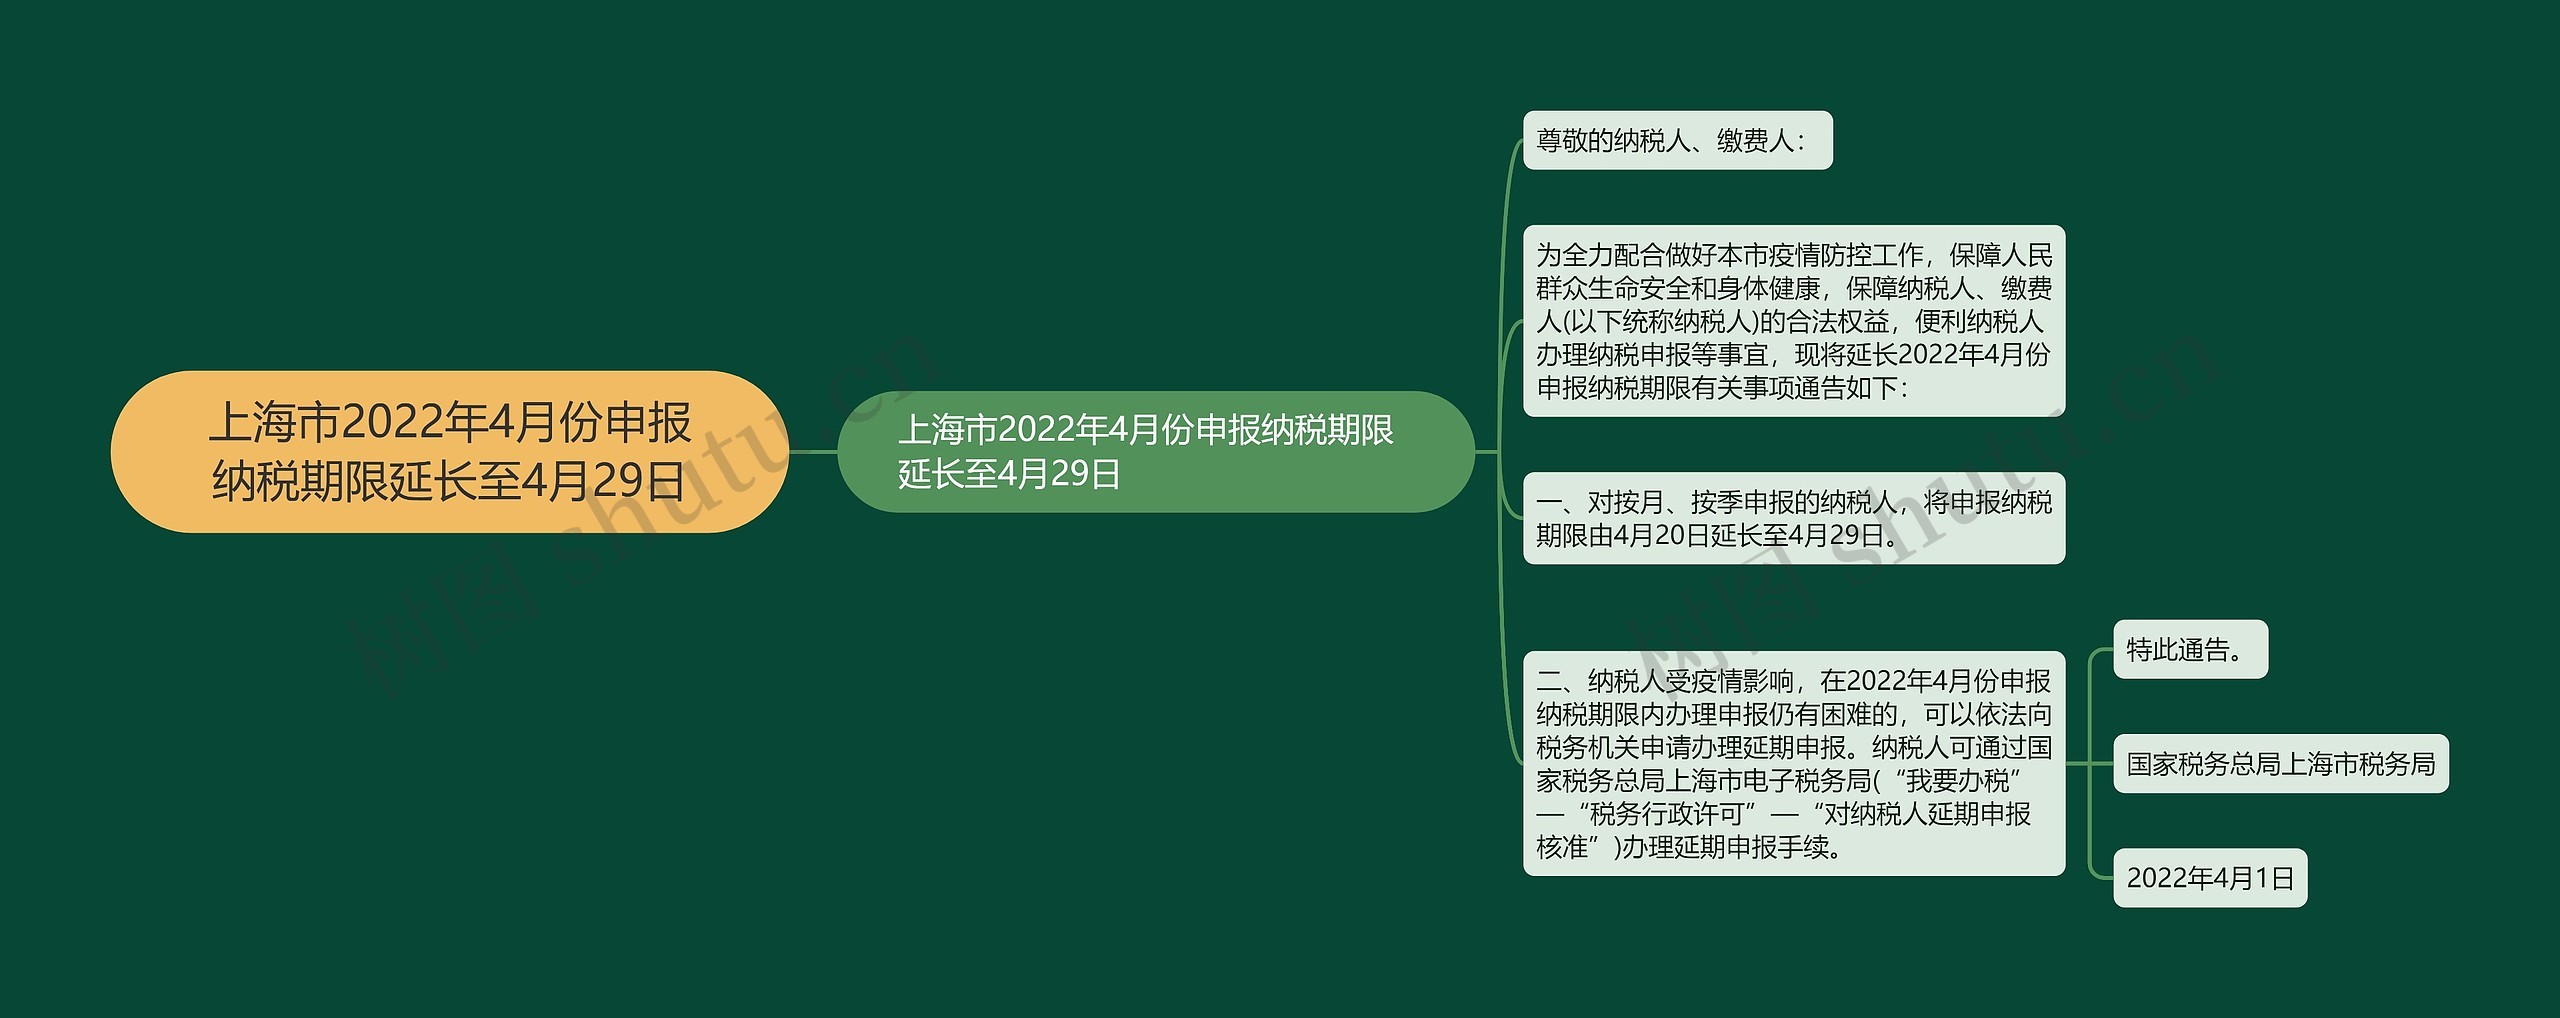 上海市2022年4月份申报纳税期限延长至4月29日